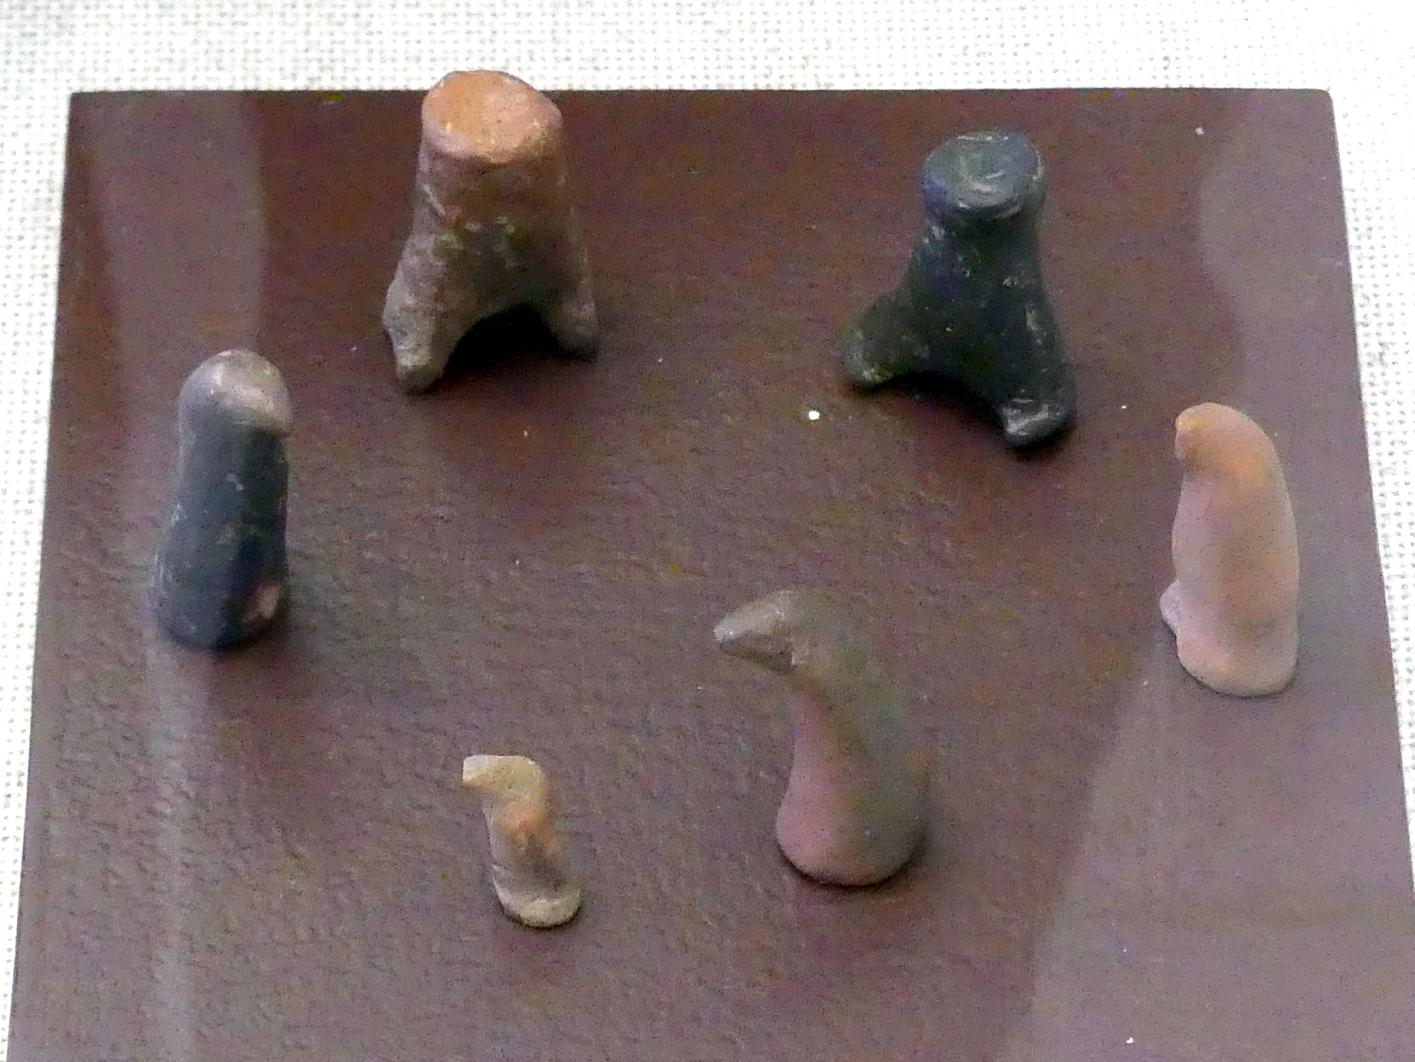 Spielzeugfigürchen, Hallstattzeit, 700 - 200 v. Chr., Bild 1/2